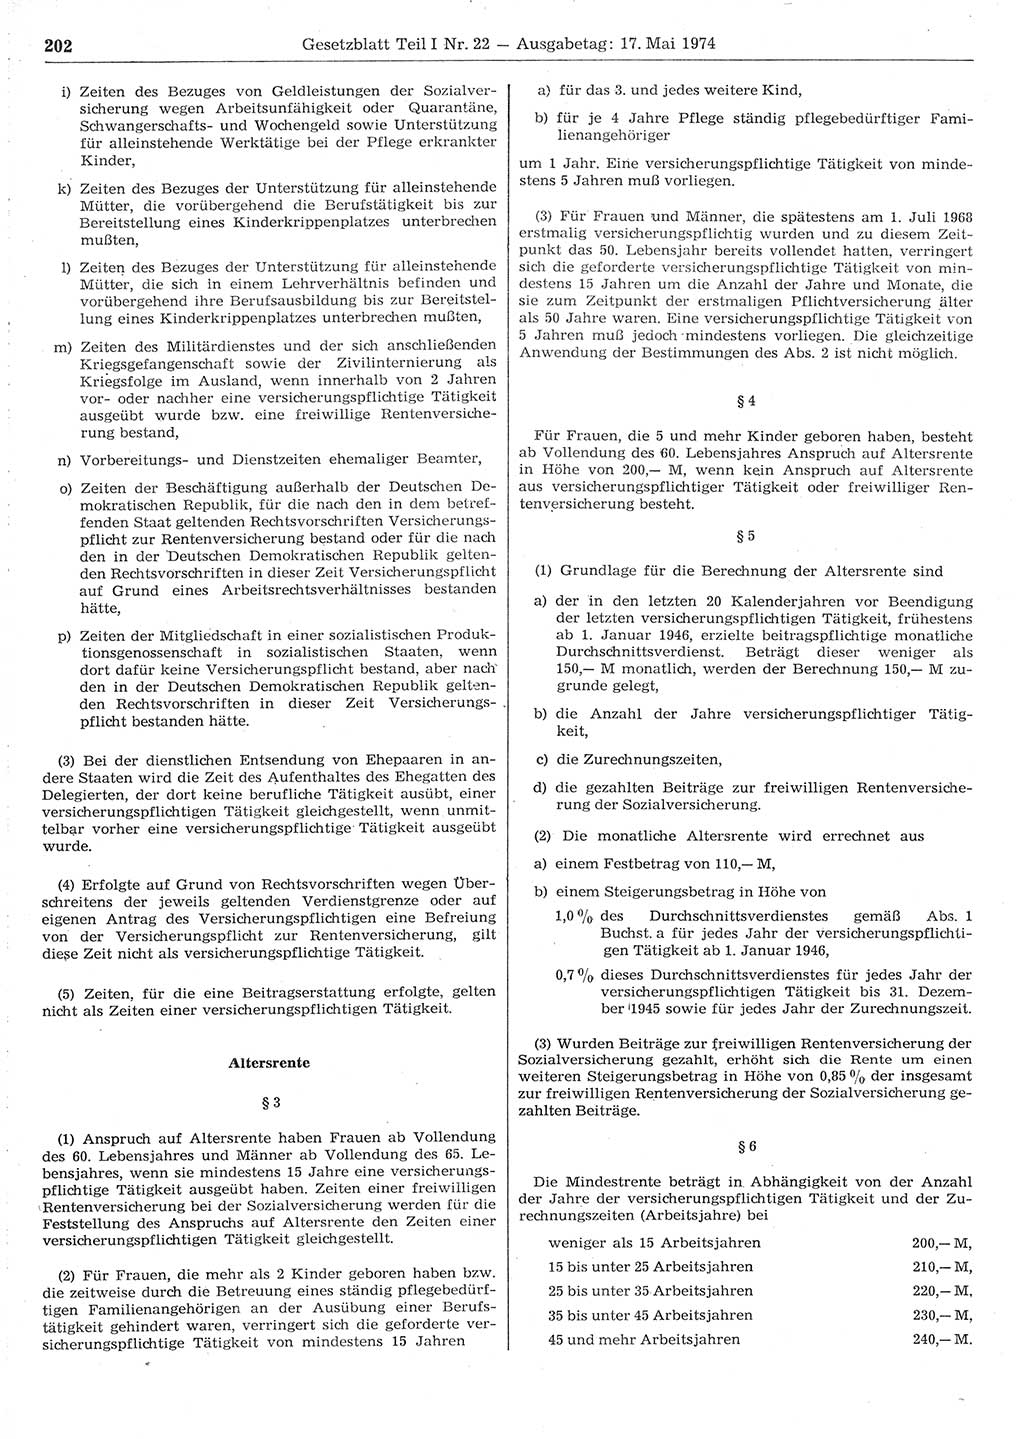 Gesetzblatt (GBl.) der Deutschen Demokratischen Republik (DDR) Teil Ⅰ 1974, Seite 202 (GBl. DDR Ⅰ 1974, S. 202)